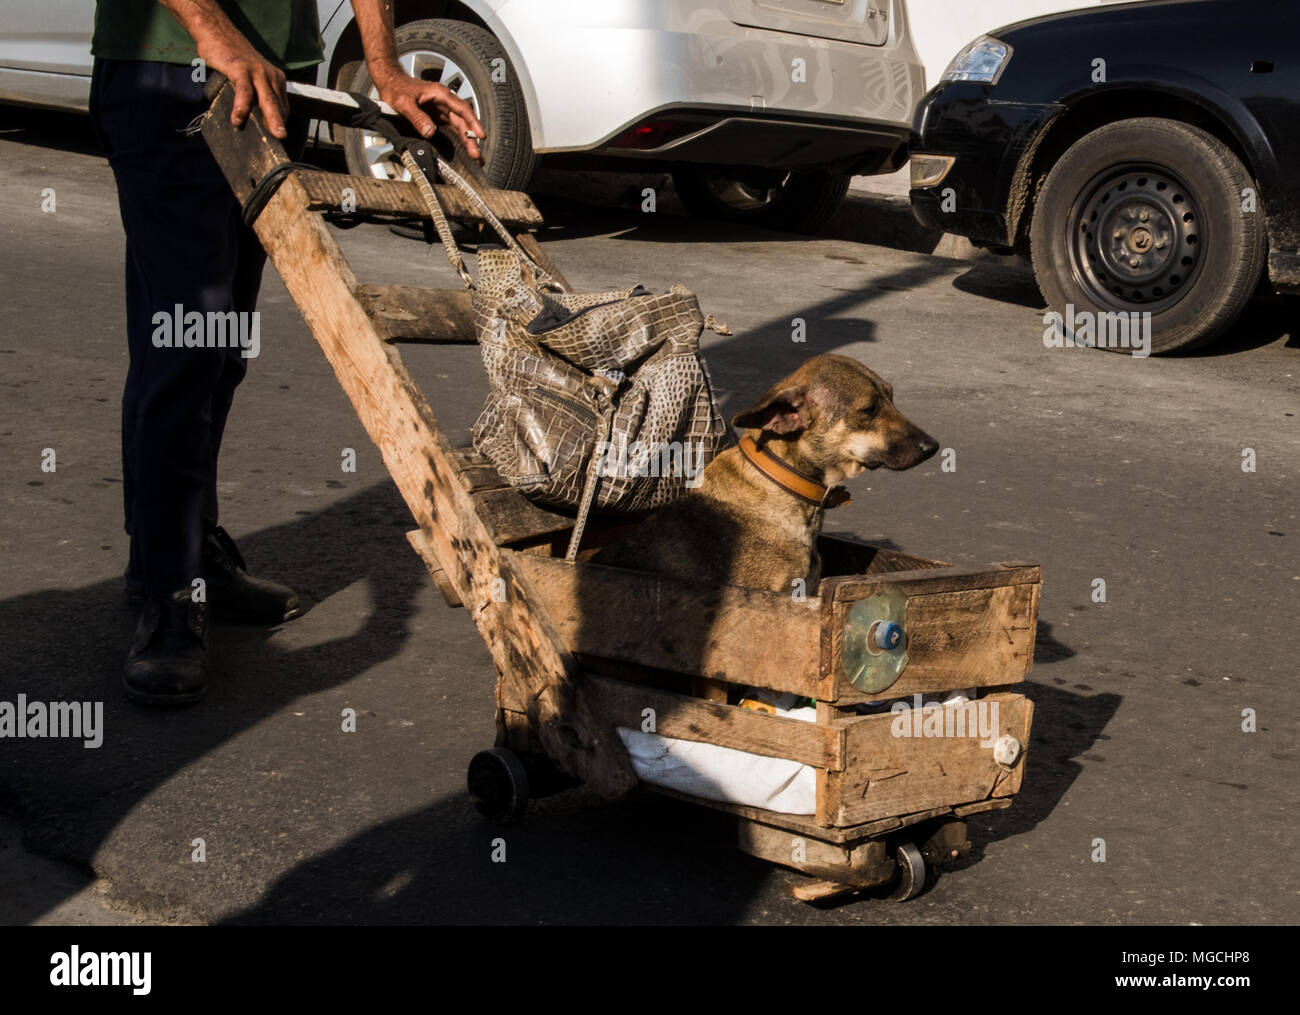 L'uomo spingendo un fatto a mano carriola, pet dog sitter in carriola, bassa sezione, Havana, Cuba Foto Stock